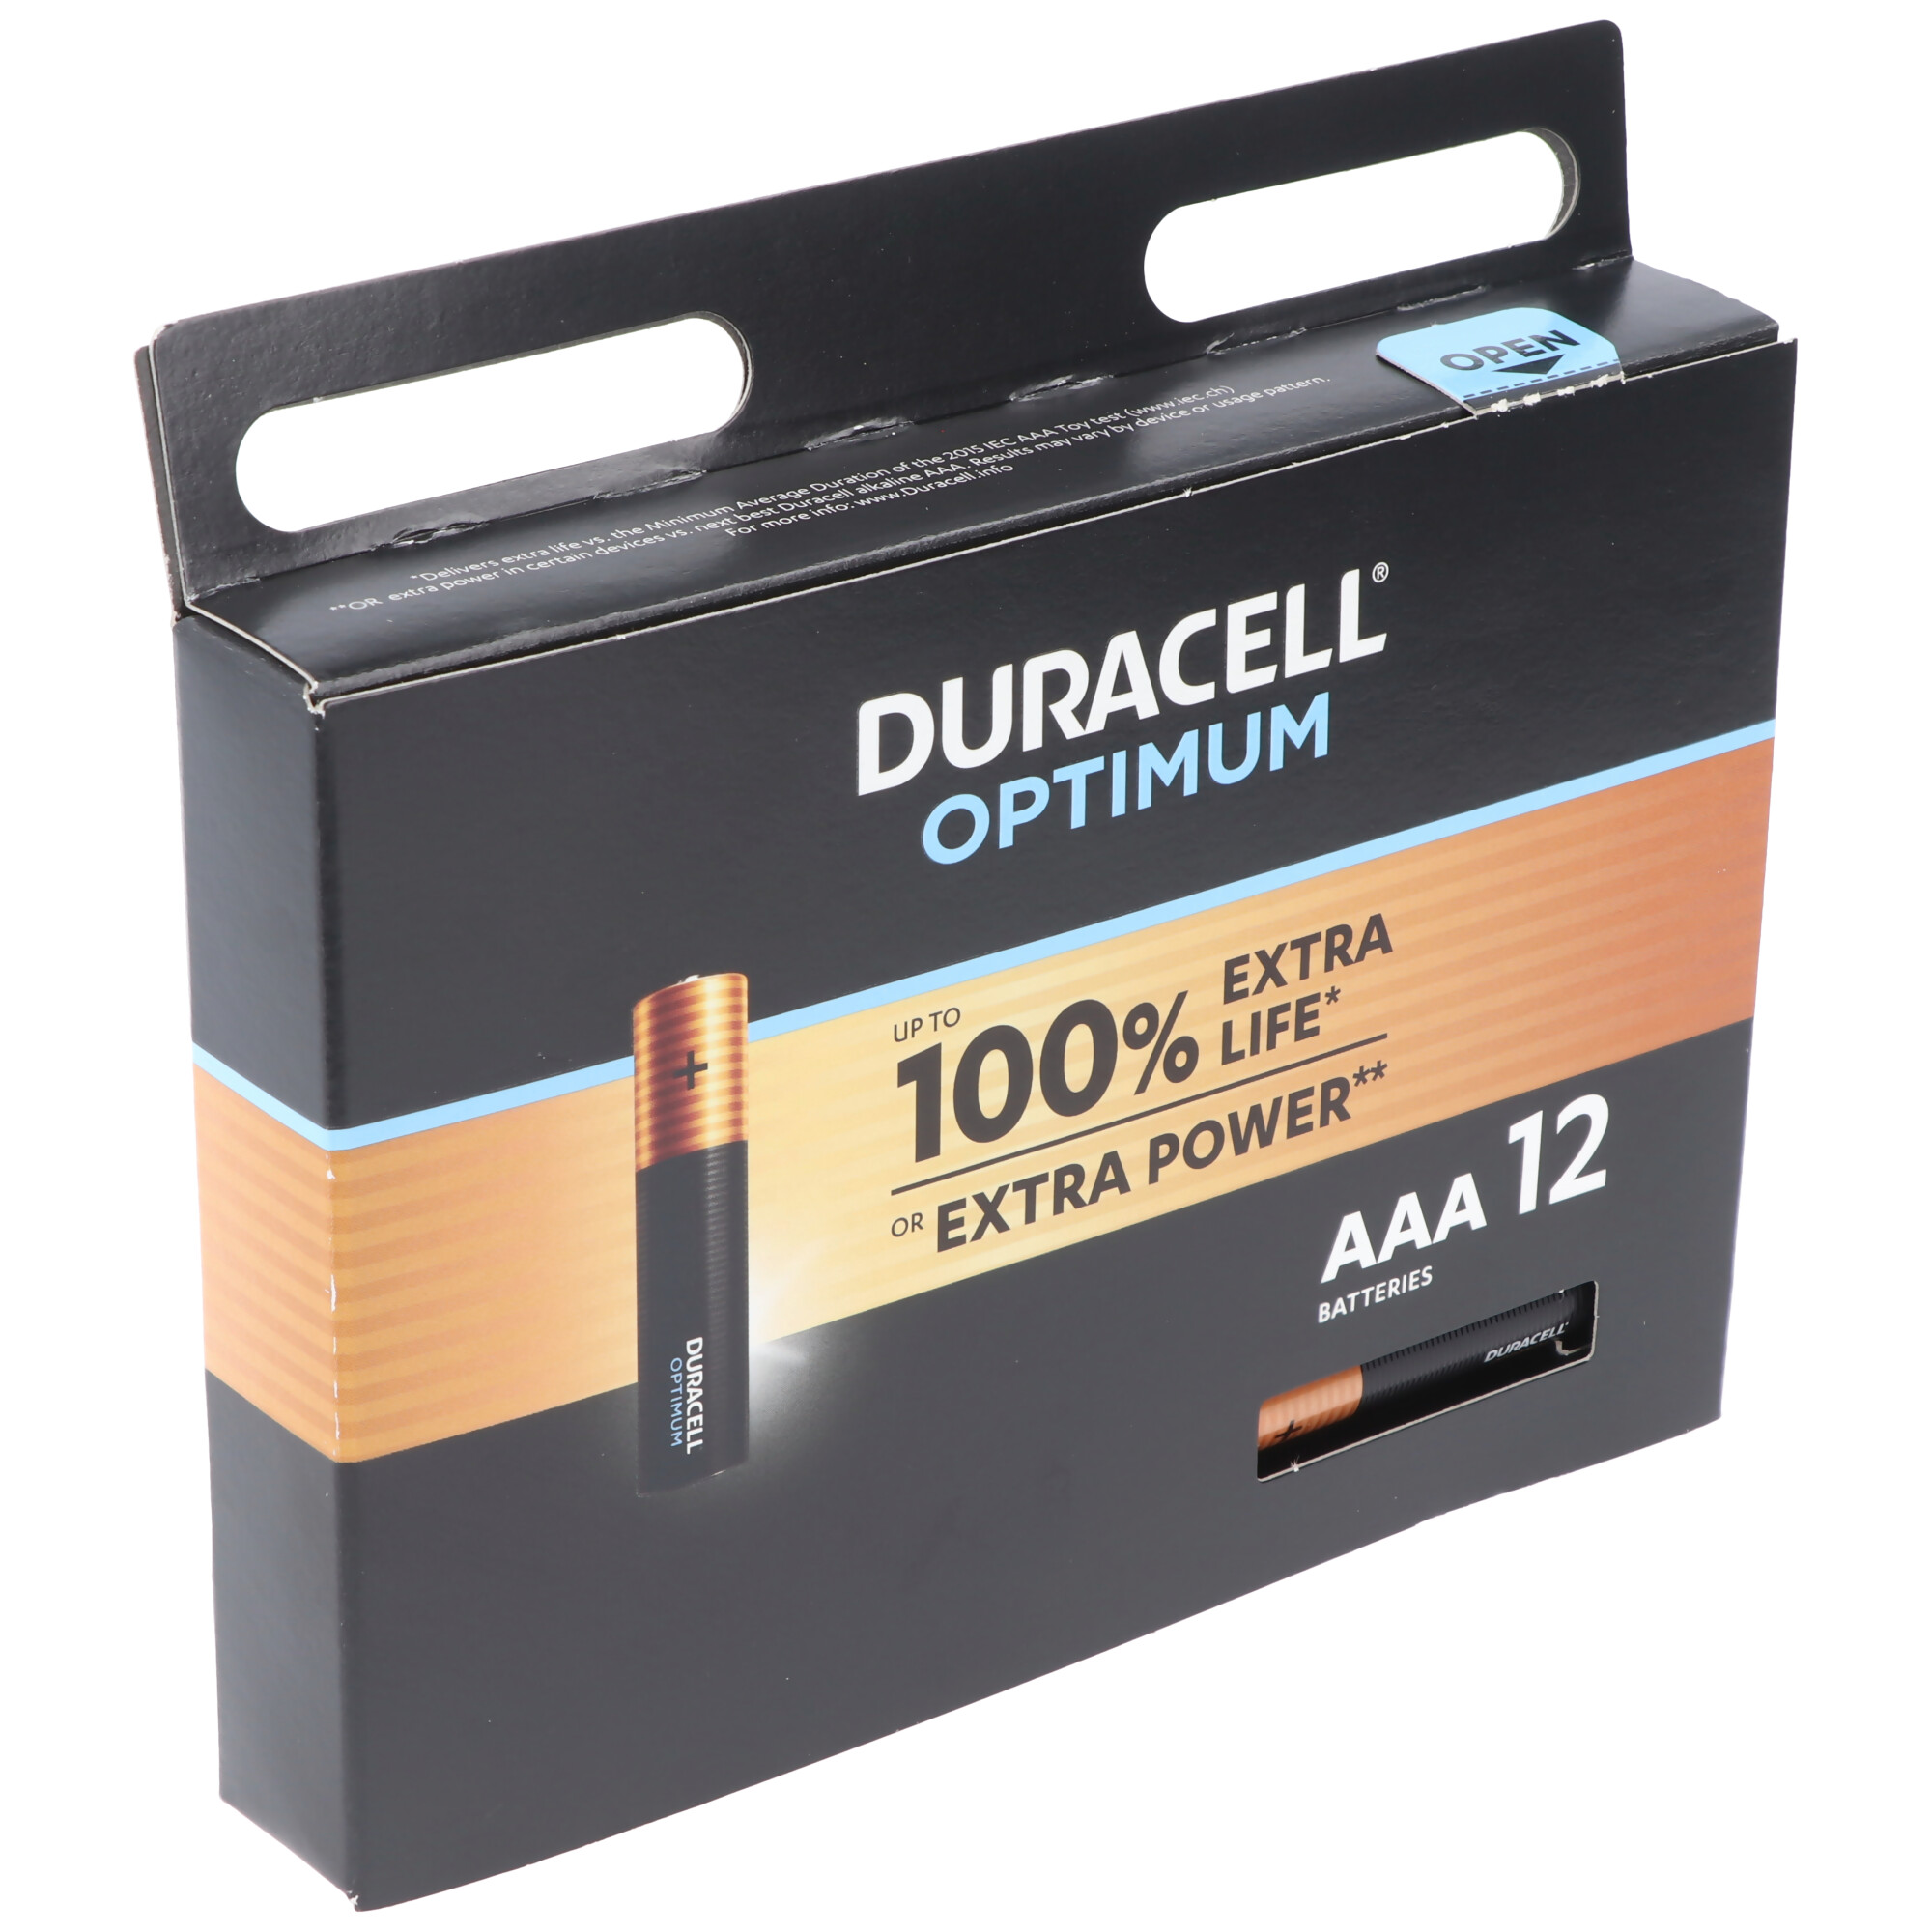 Piles AAA - Lot de 40 Piles - GP Ultra - Batteries Alcalines AAA